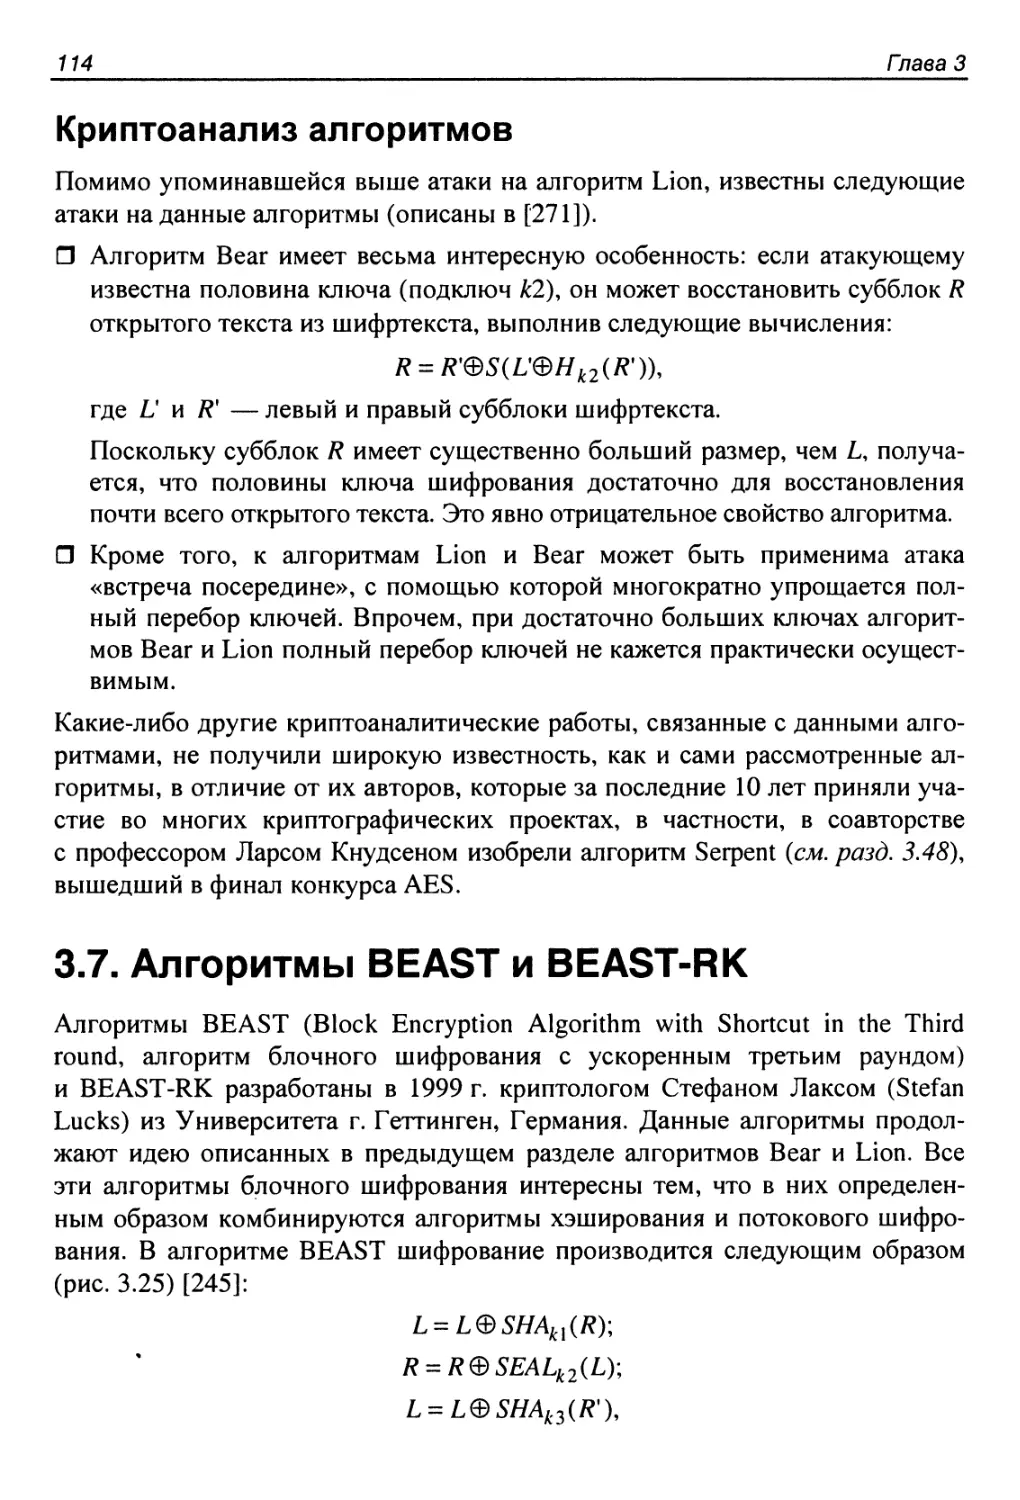 Криптоанализ алгоритмов
3.7. Алгоритмы BEAST и BEAST-RK